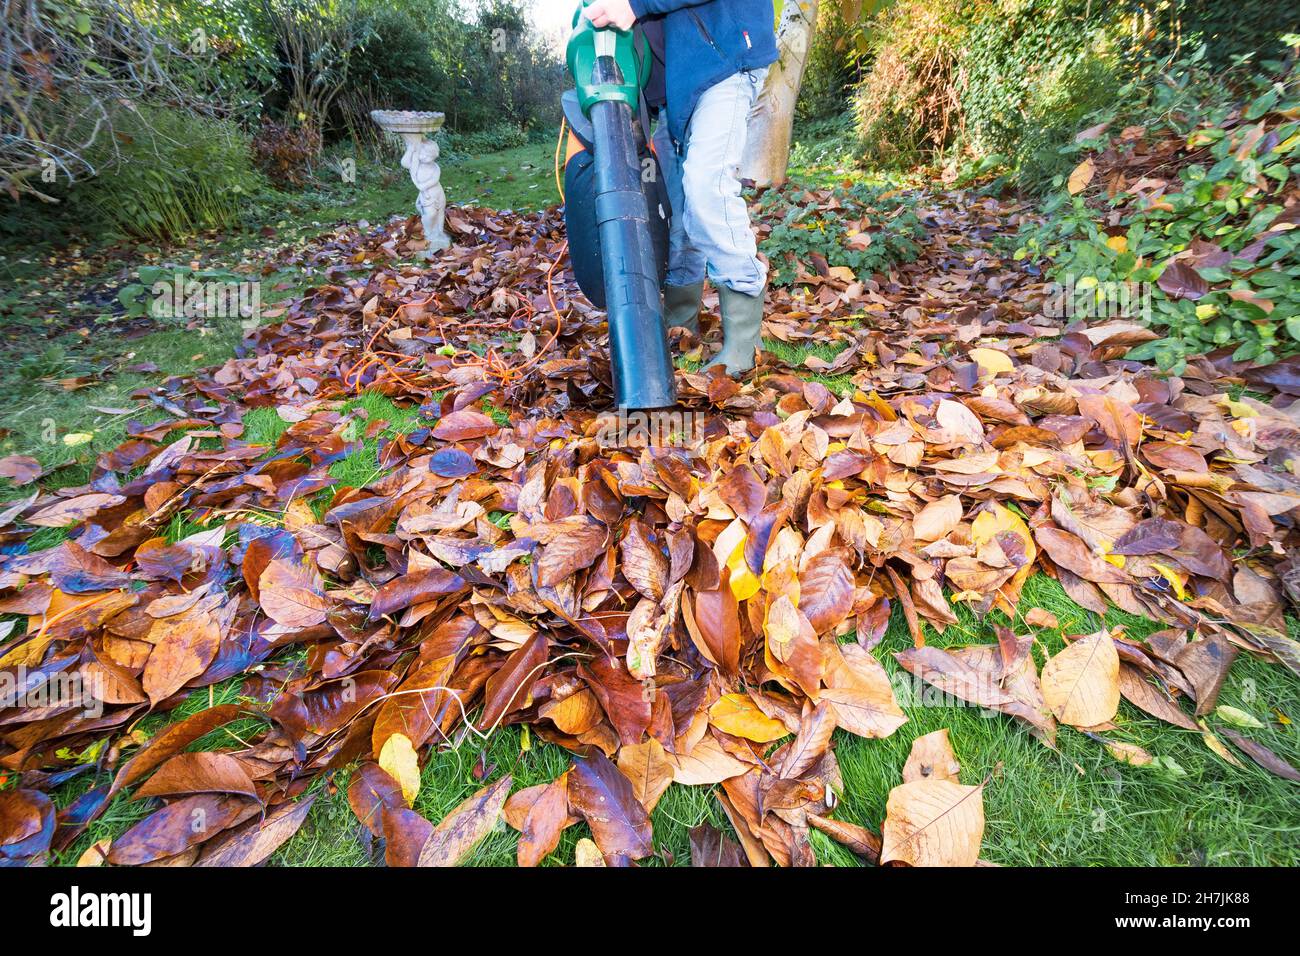 Mit elektrischem Vakuum im Herbst auf gefallenen Magnolienblättern auf Grasrasen, bereit, Blattform oder Mulch nach Verrottung in Müllsäcken zu machen Stockfoto